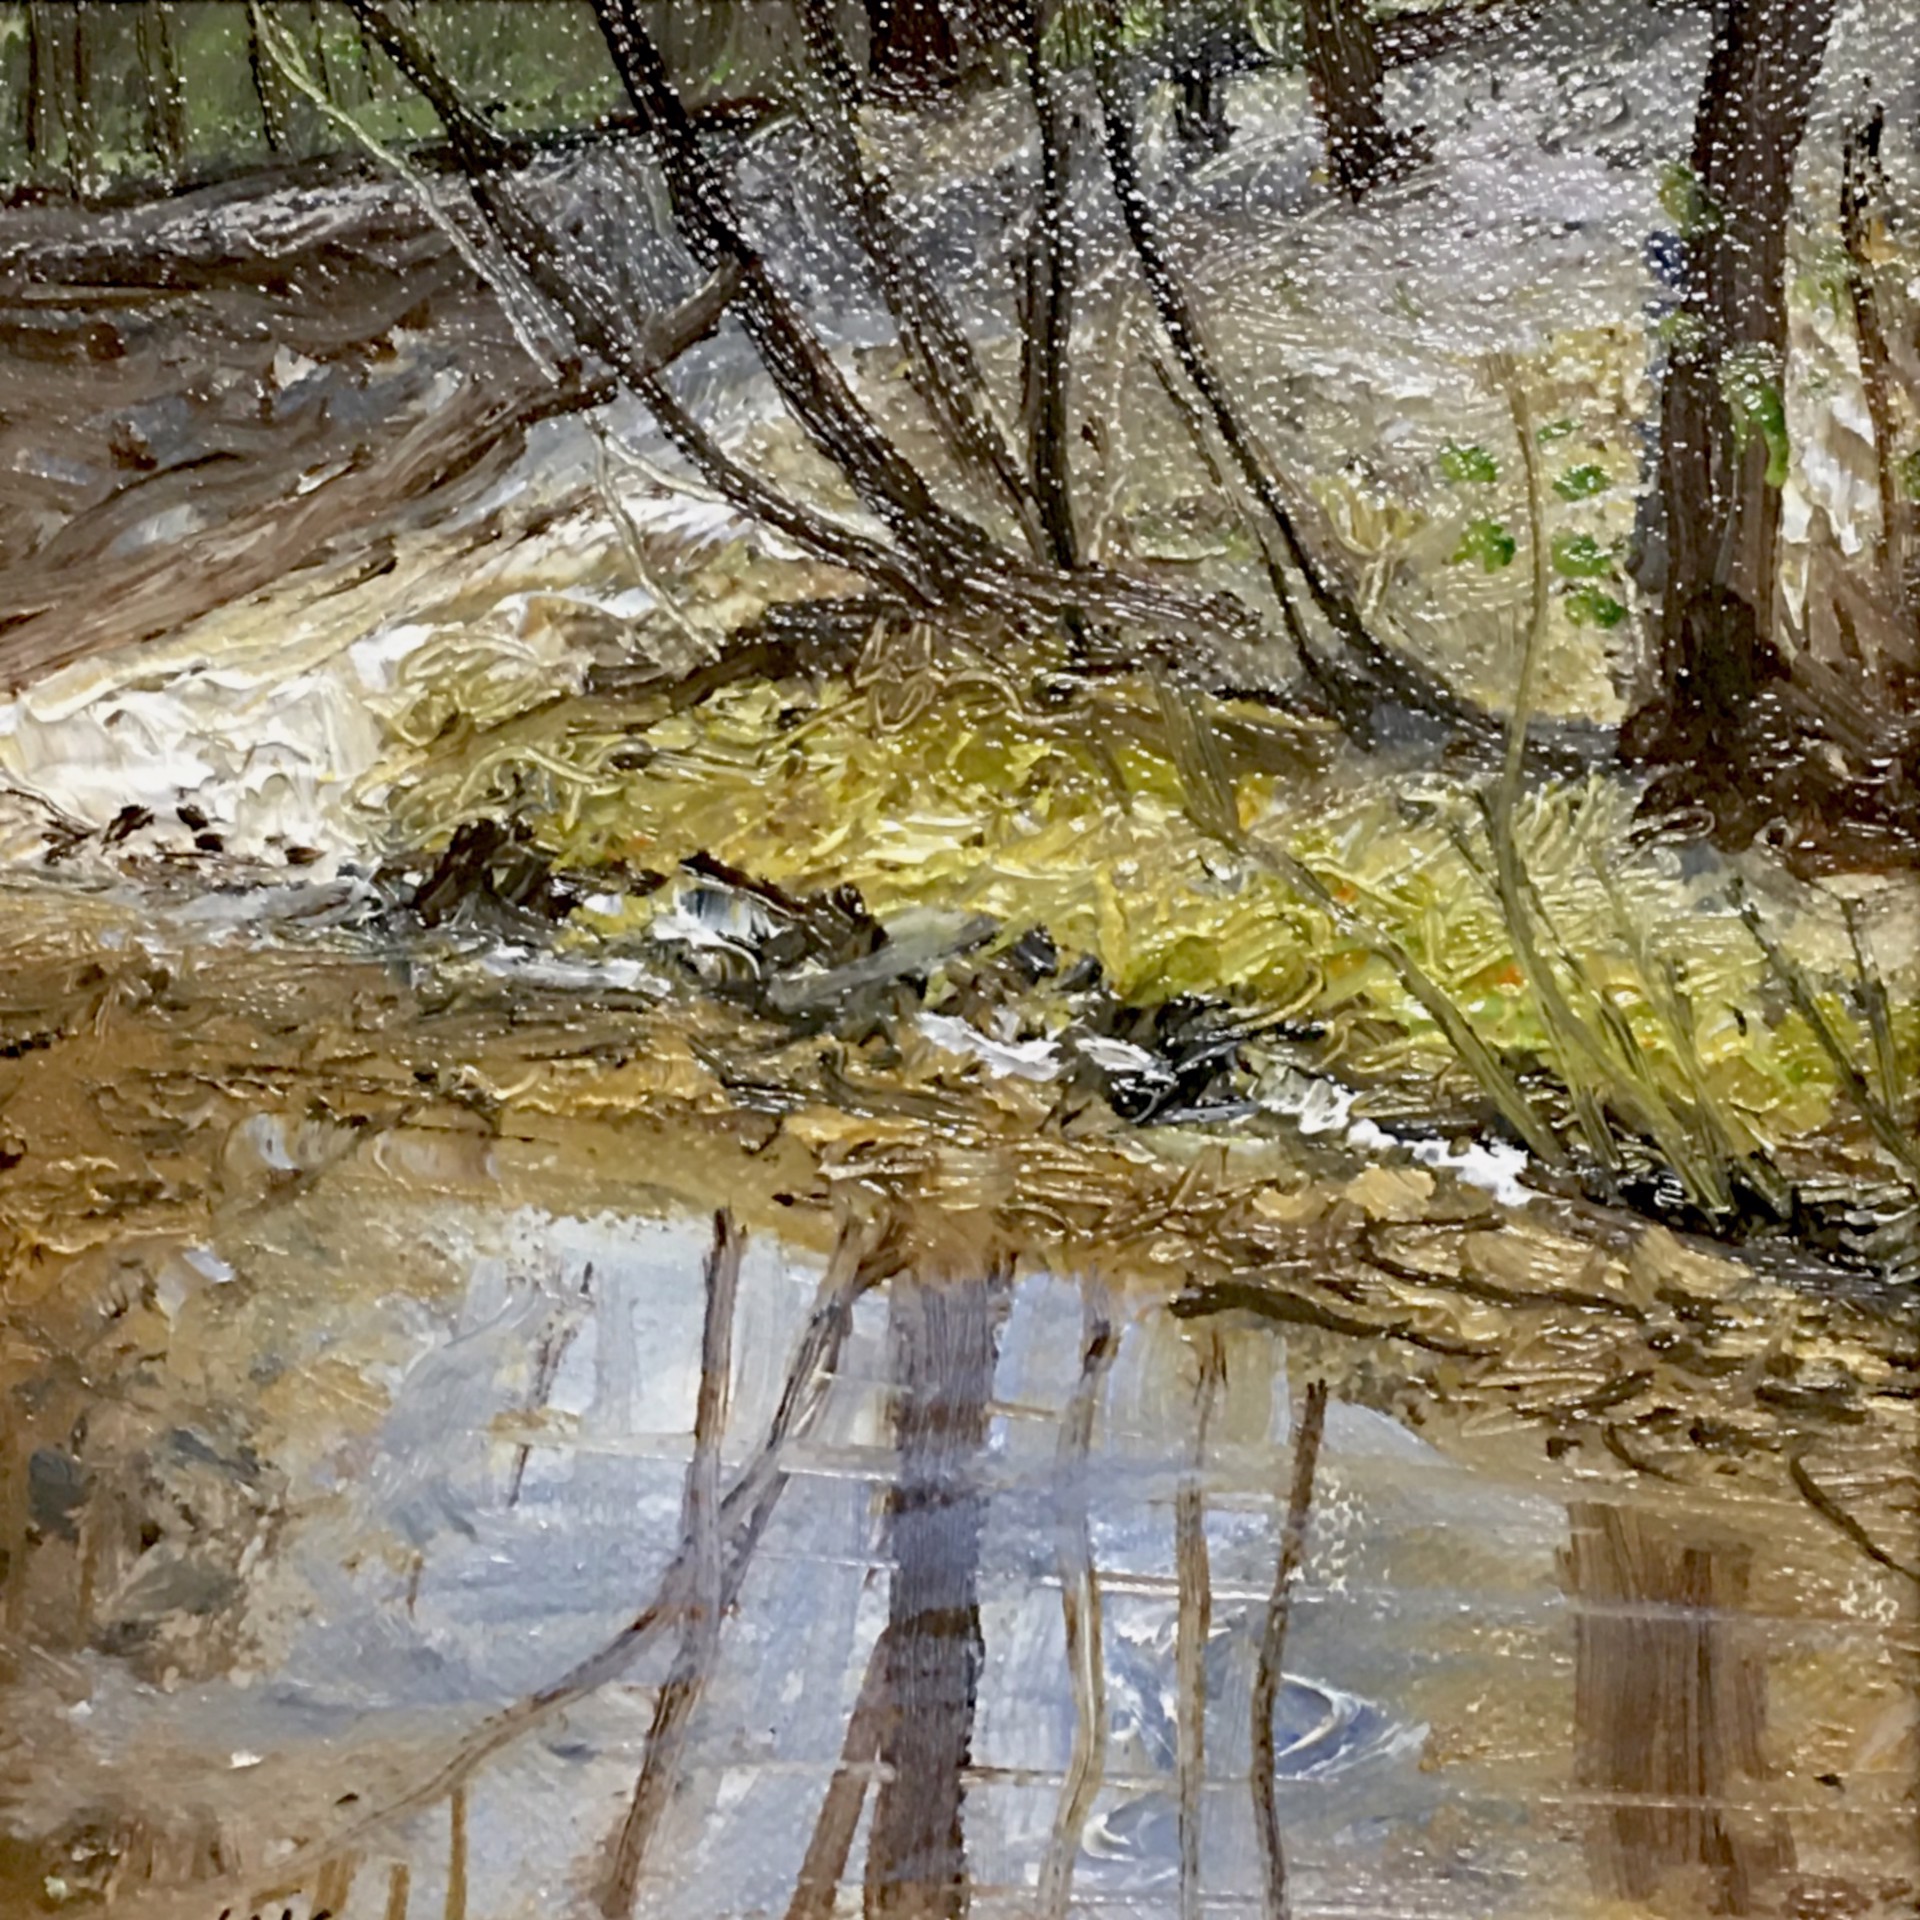 Creek Study by Frank Baggett